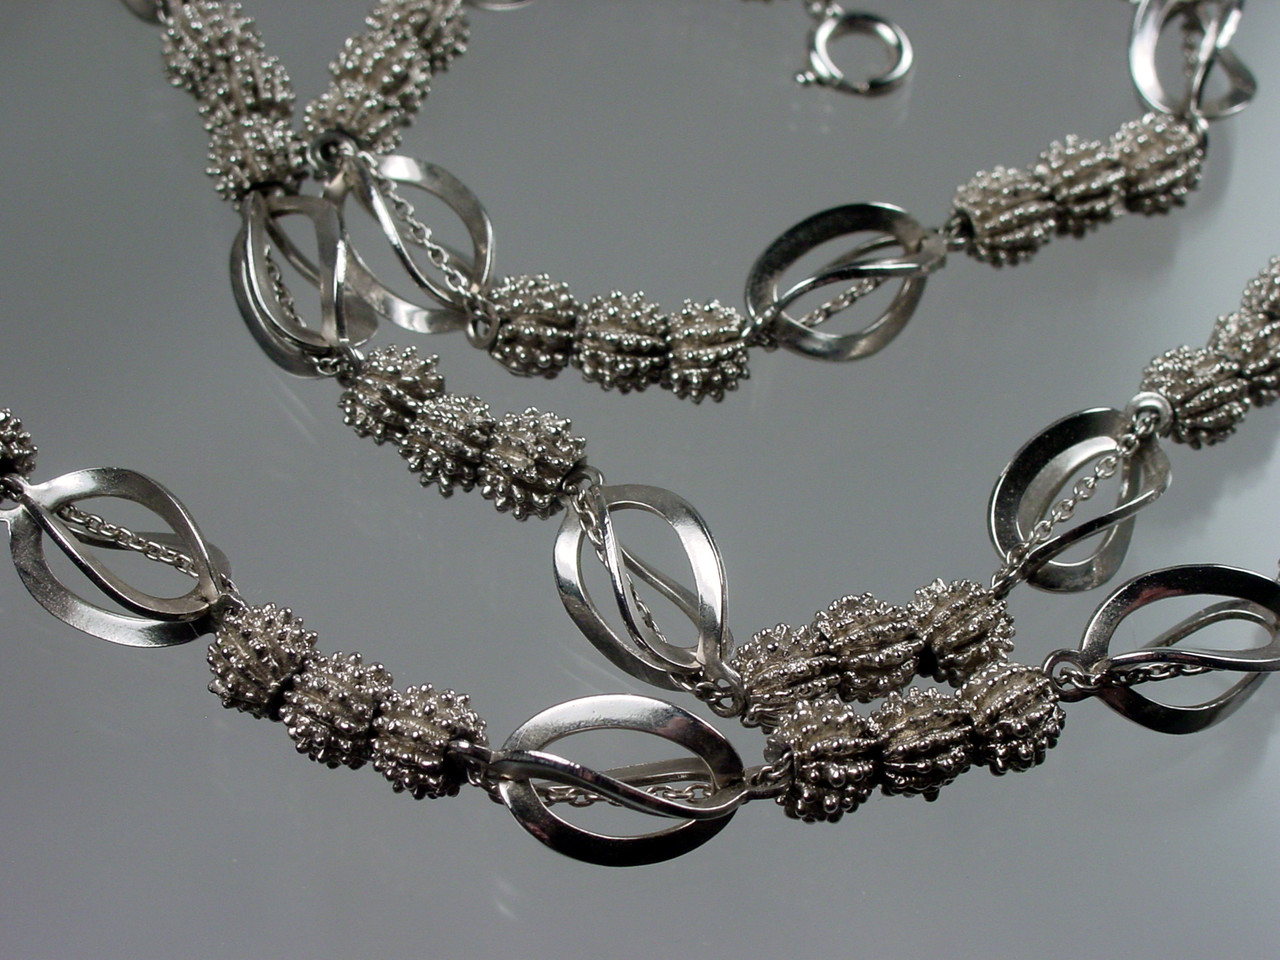 Sea Urchin Beads on Chain